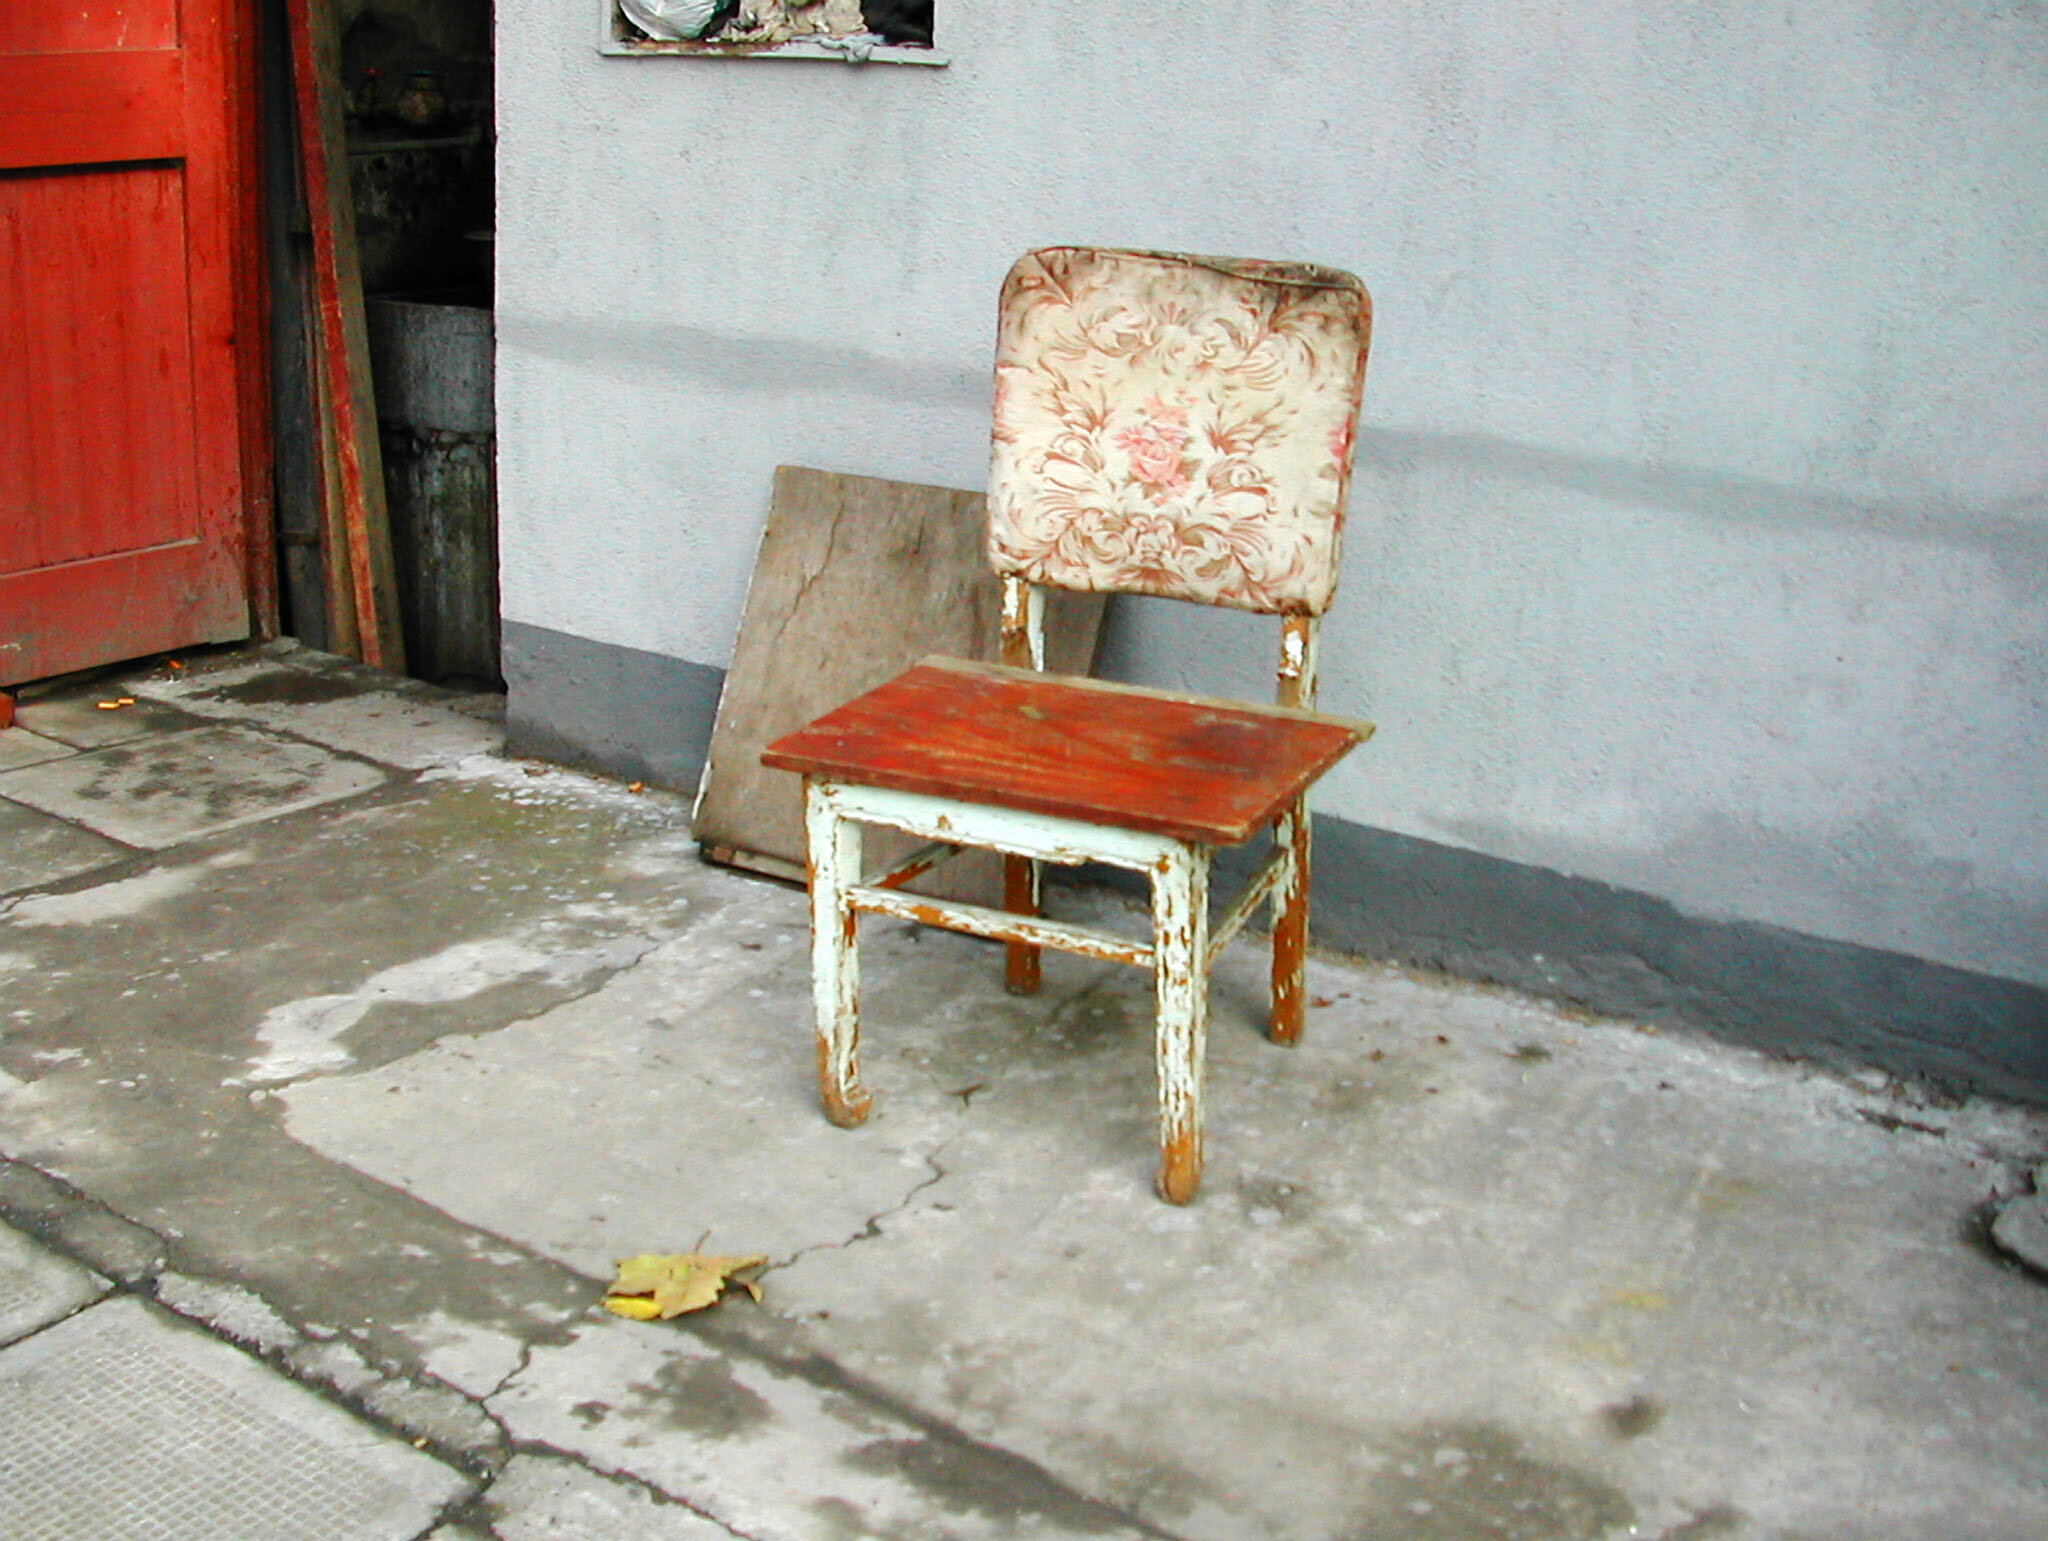  Shanghai Chair No. 16 